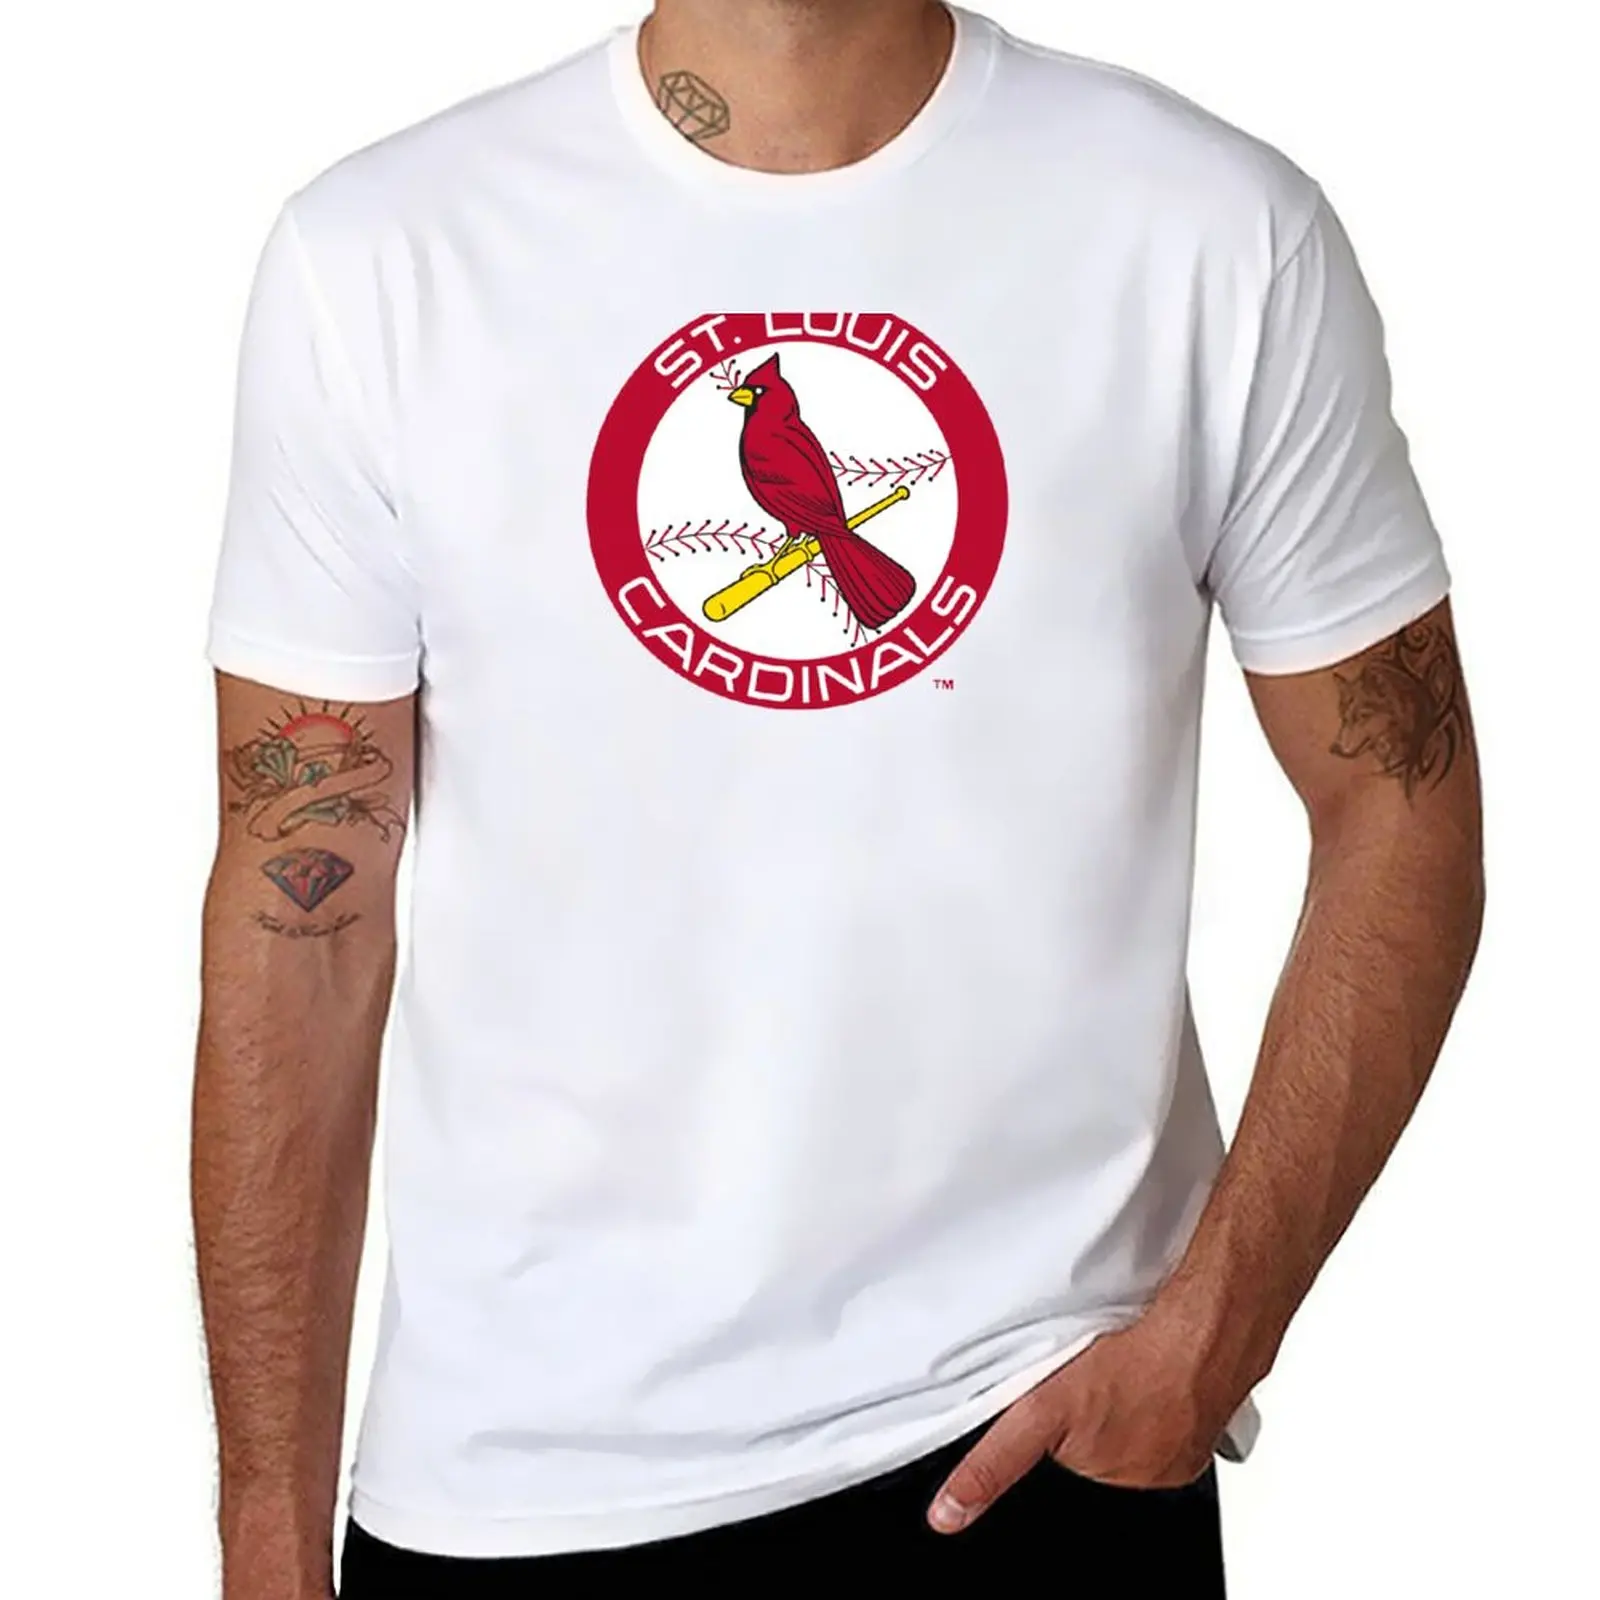 New St Louis Cardinal Sports Unisex Logo Black T-Shirt For Baseball Fans S- 3Xl Customize Tee Shirt - AliExpress